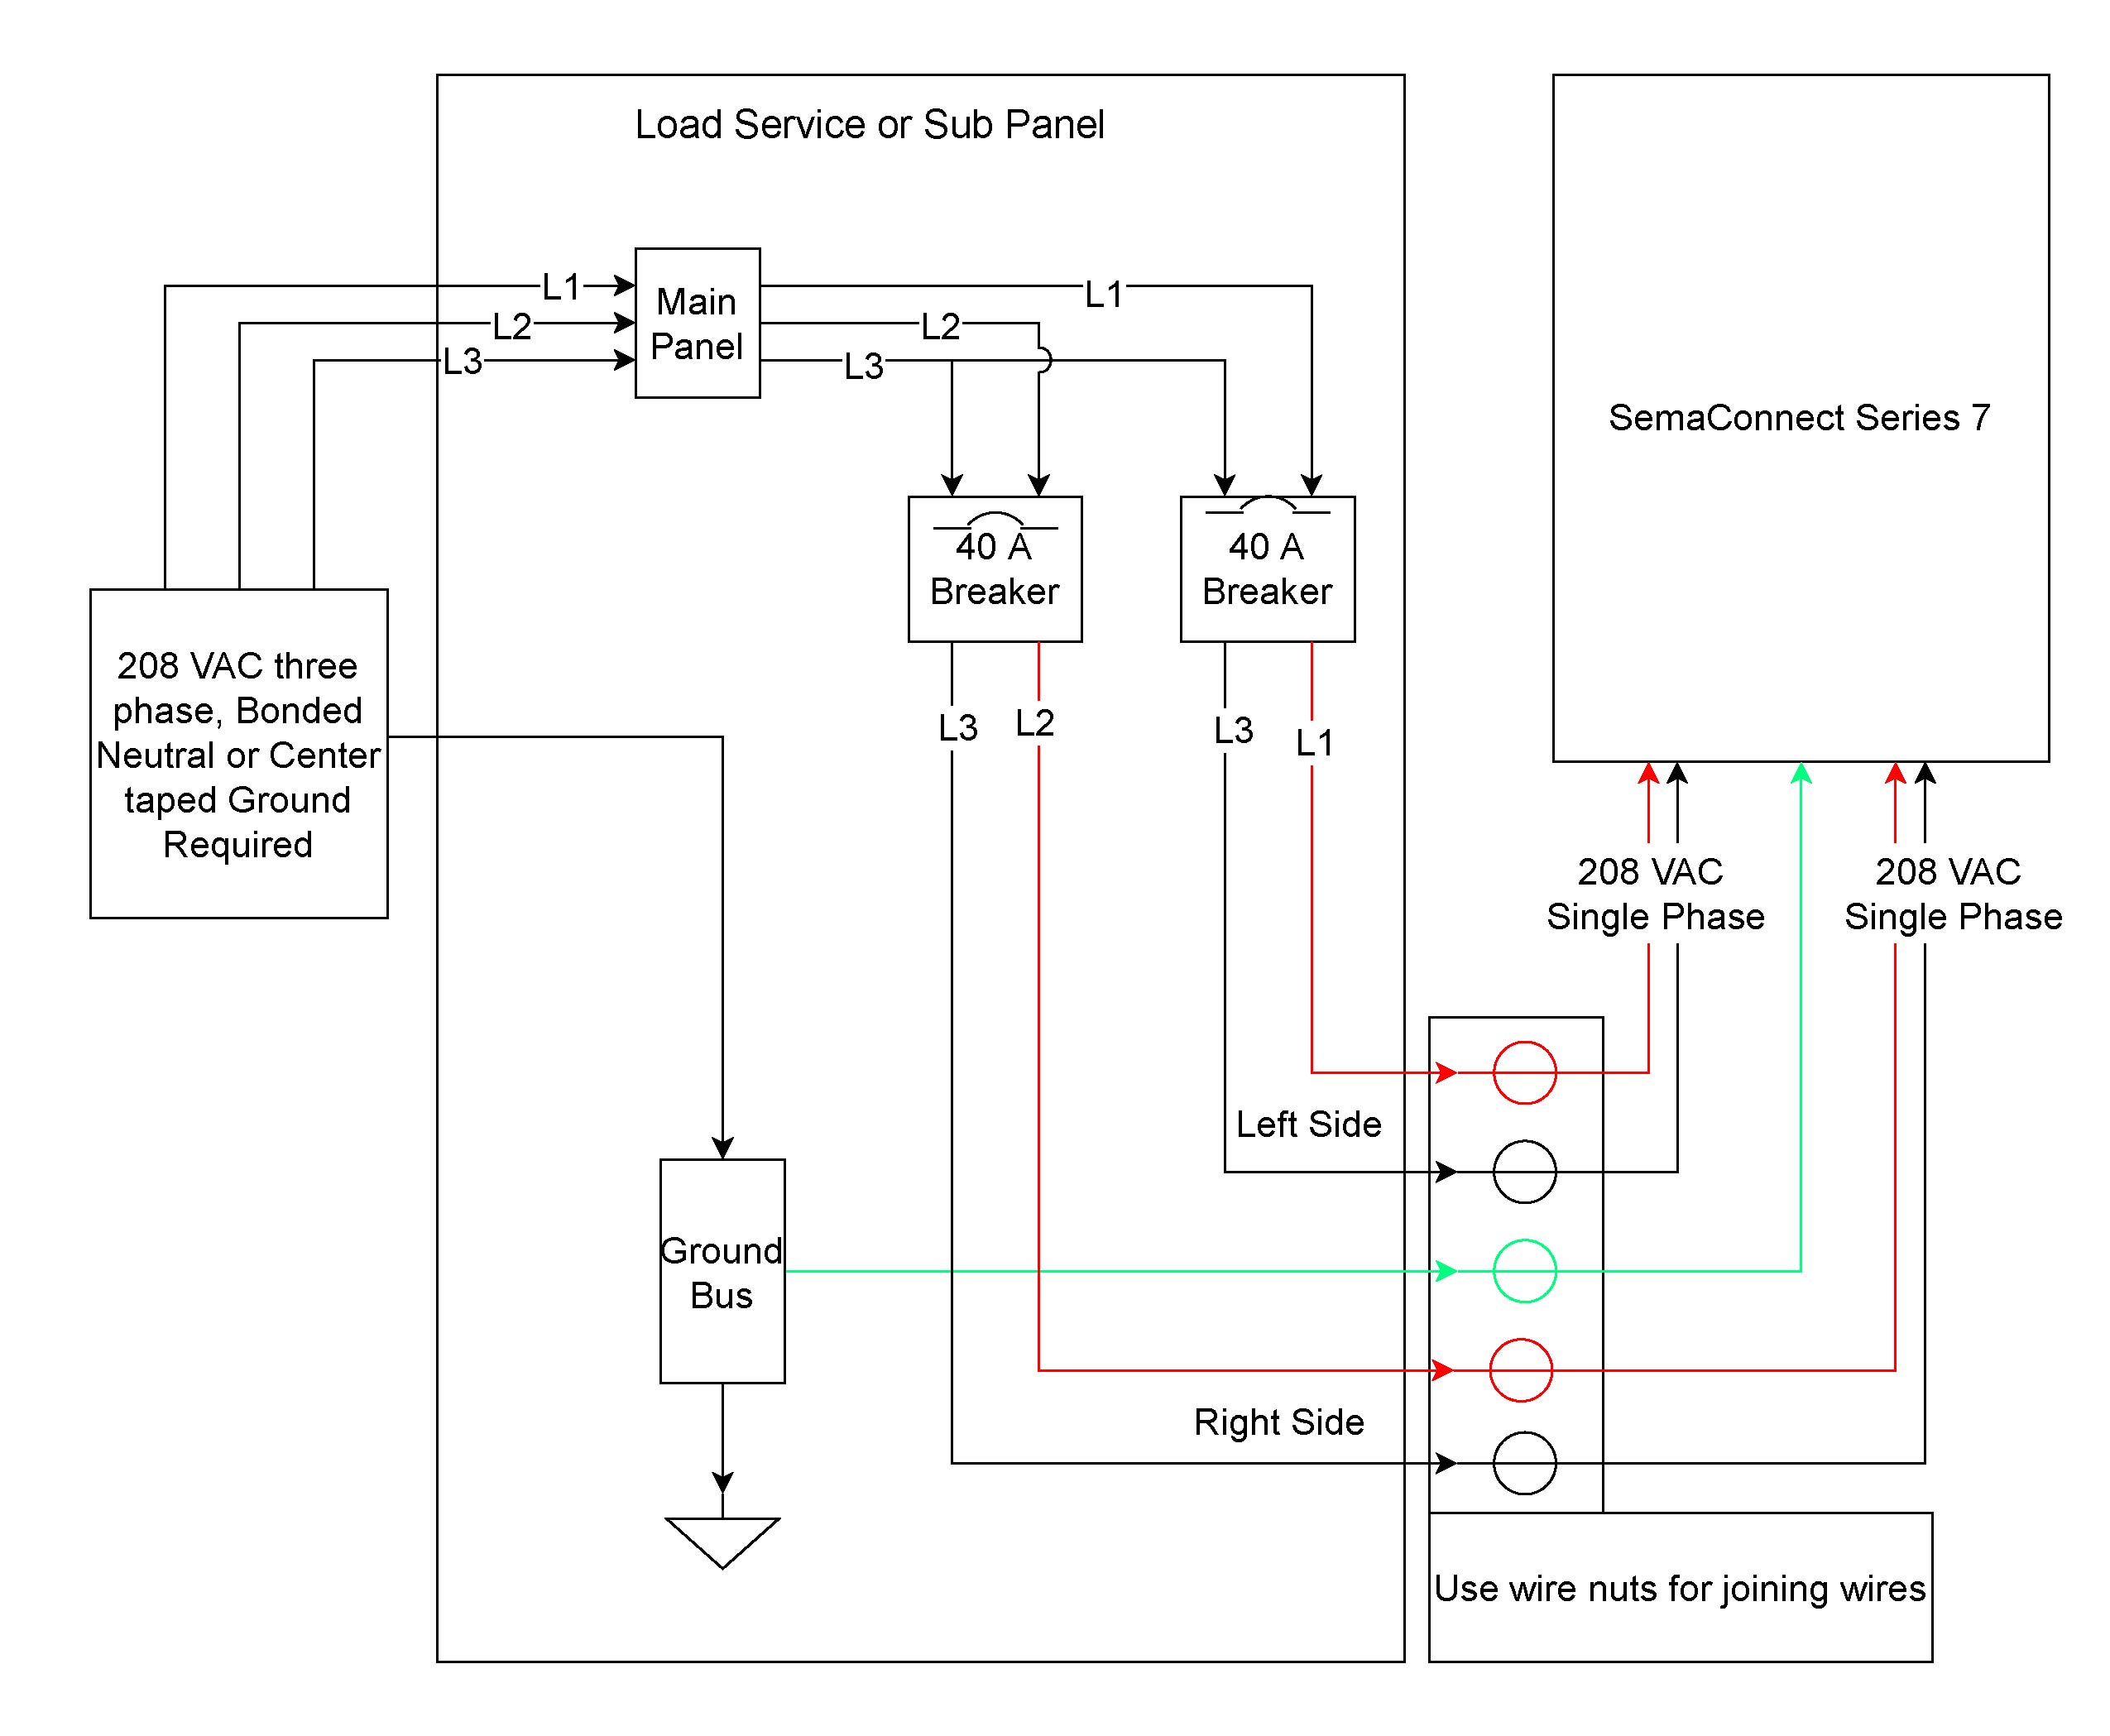 wiring diagram for lt160 mower